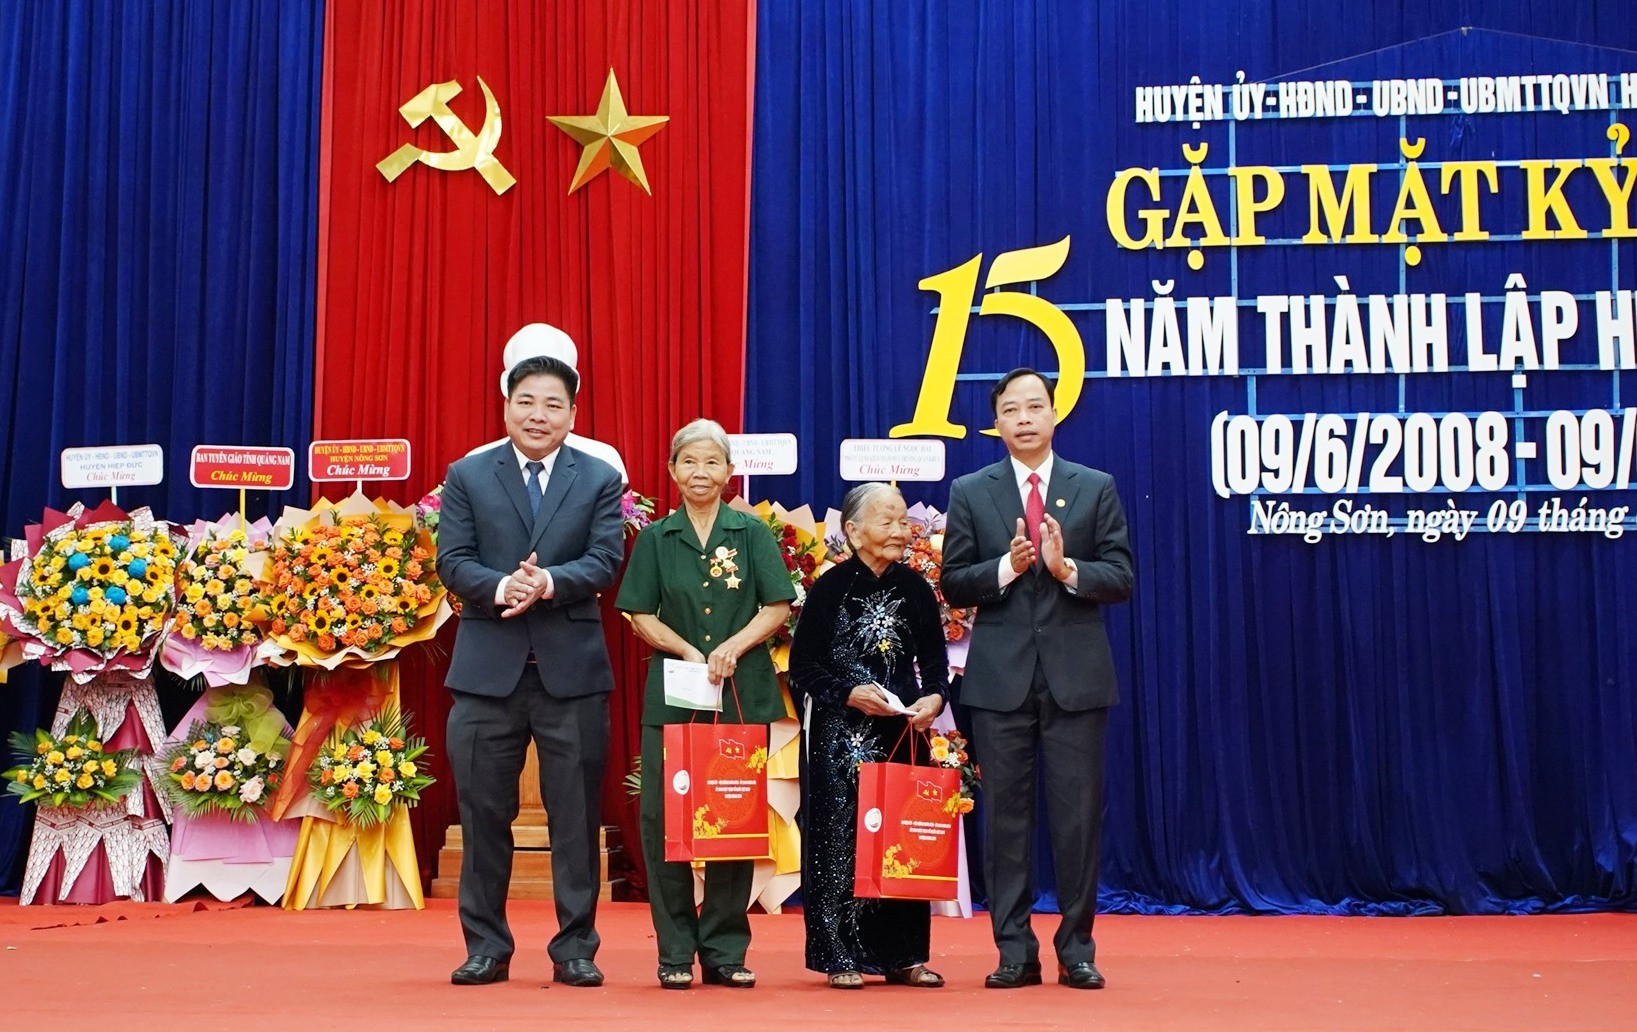 Đại diện Huyện ủy, UBND huyện Nông Sơn trao quà Mẹ VNAH và Anh hùng LLVTND huyện tại lễ gặp mặt. Ảnh: M.T